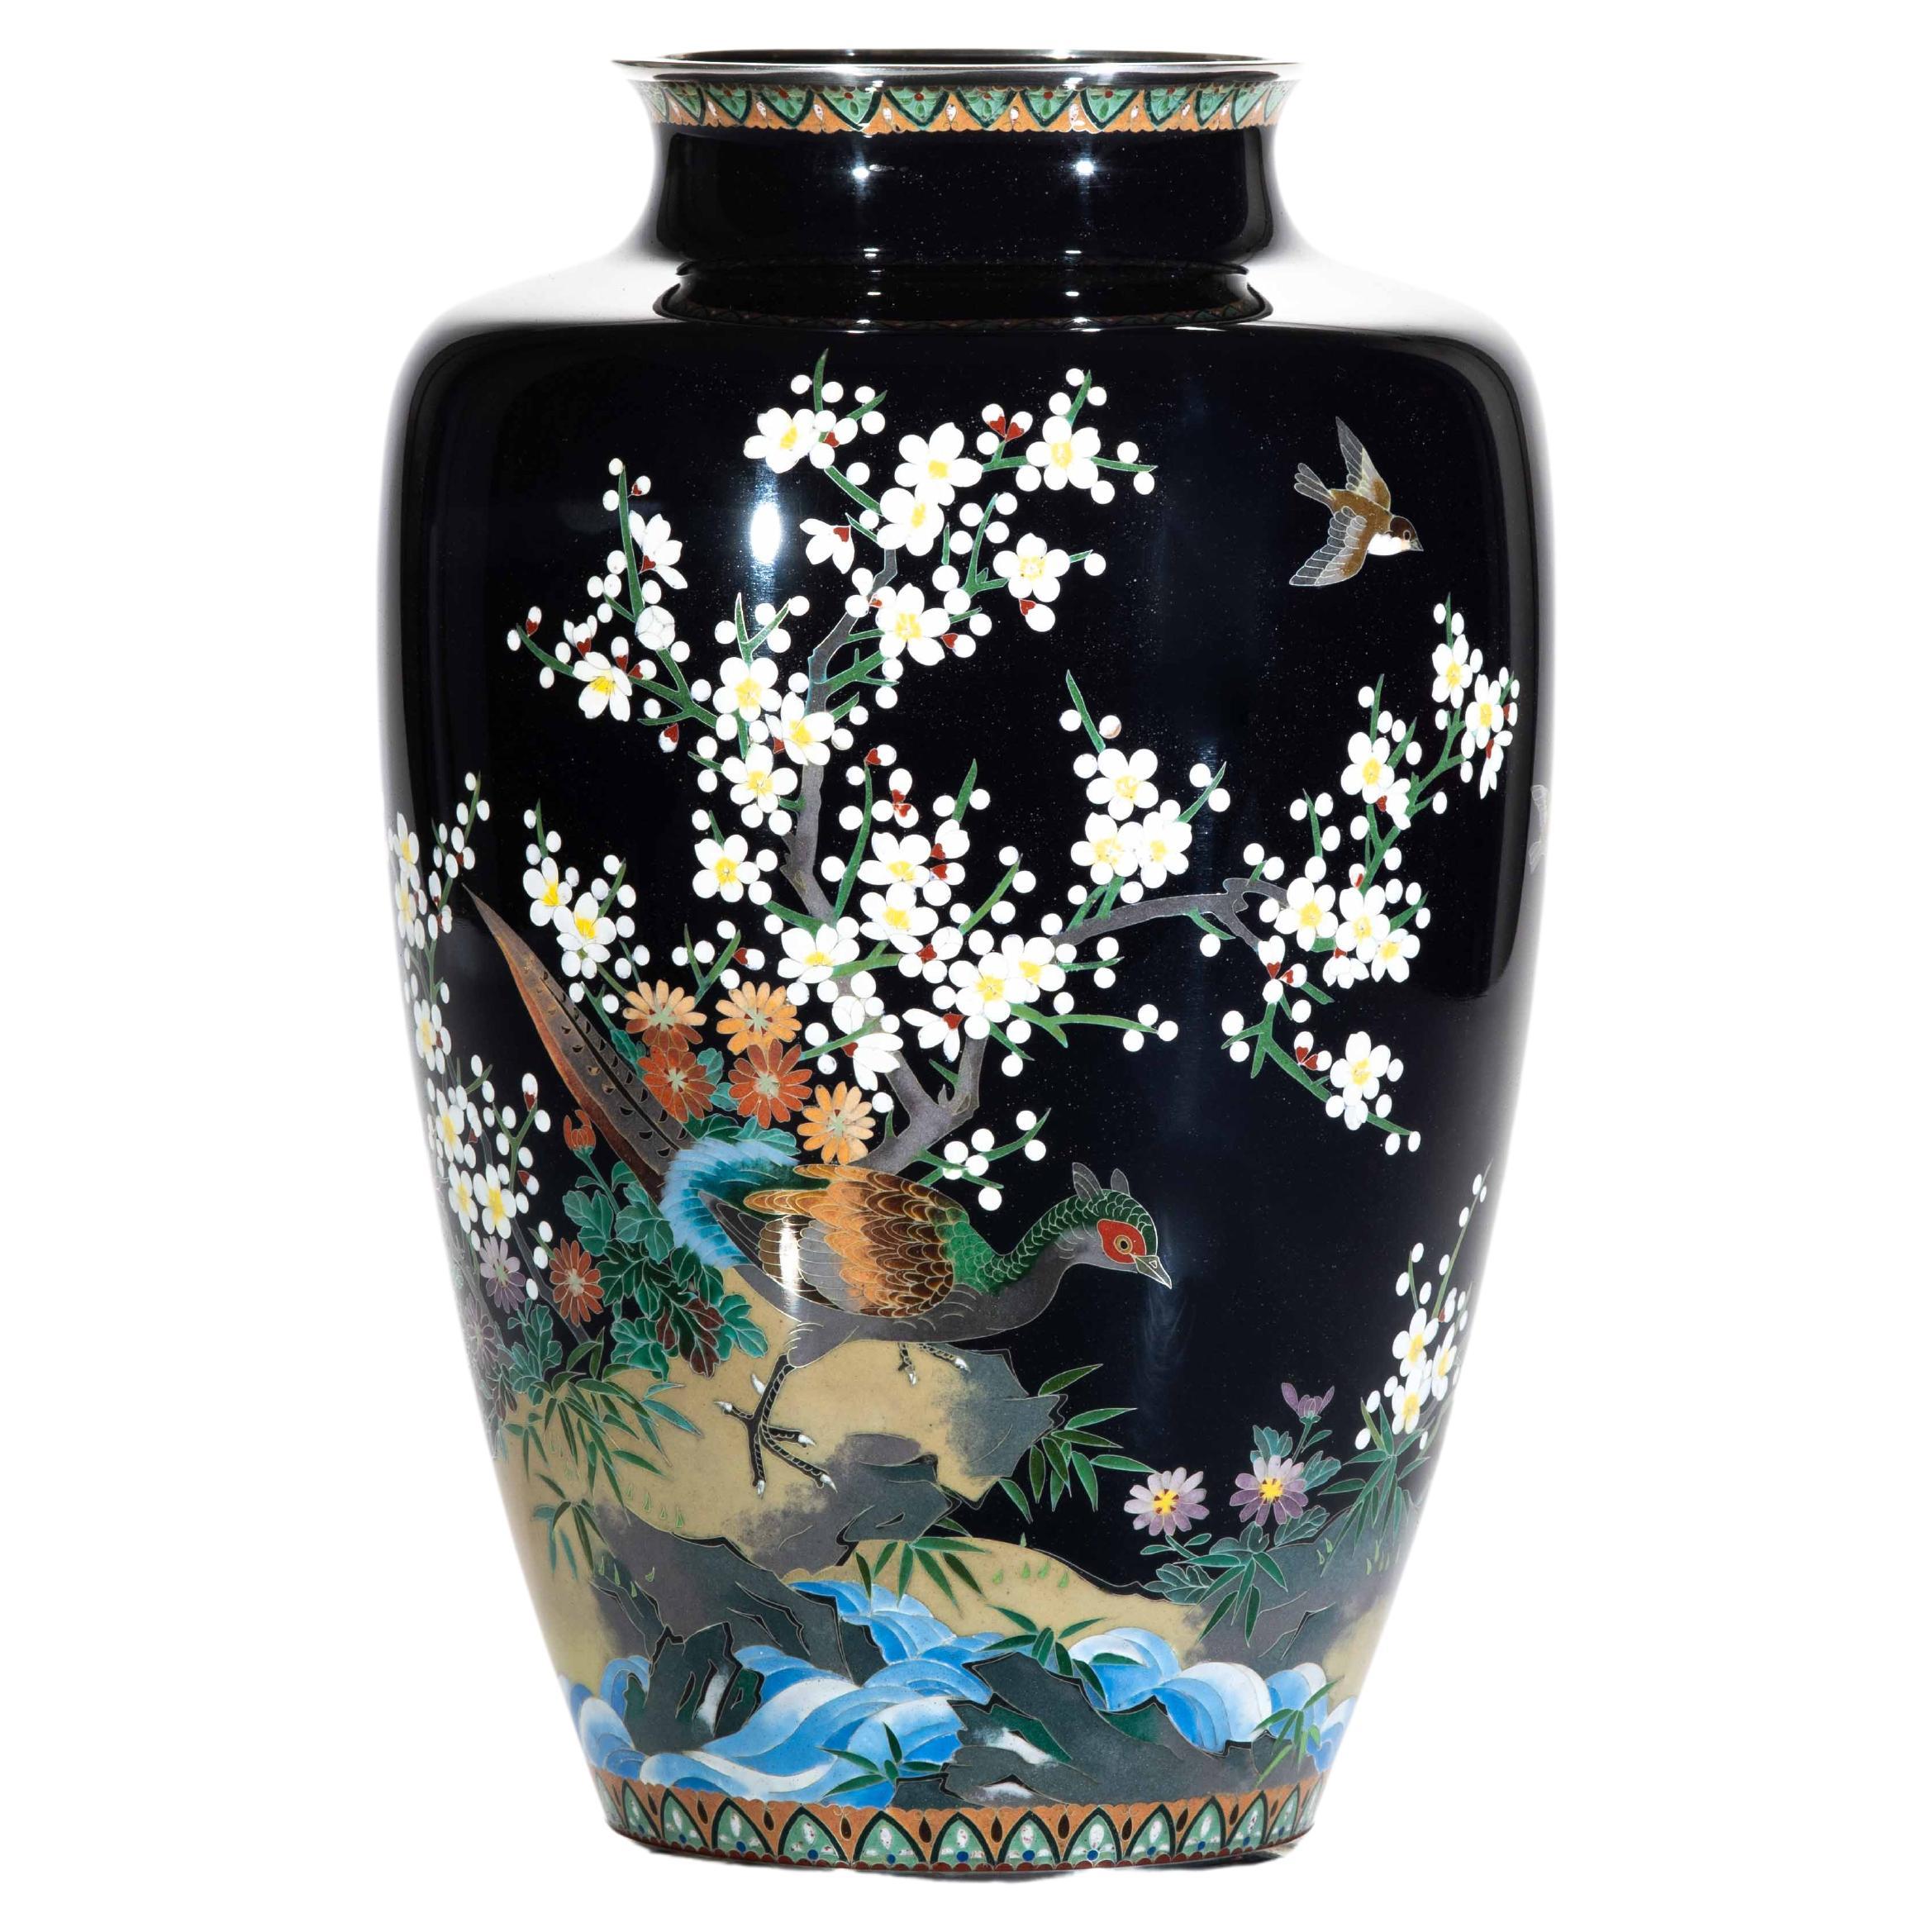 Vase en cloisonné représentant un faisan entouré de cerisiers en fleurs